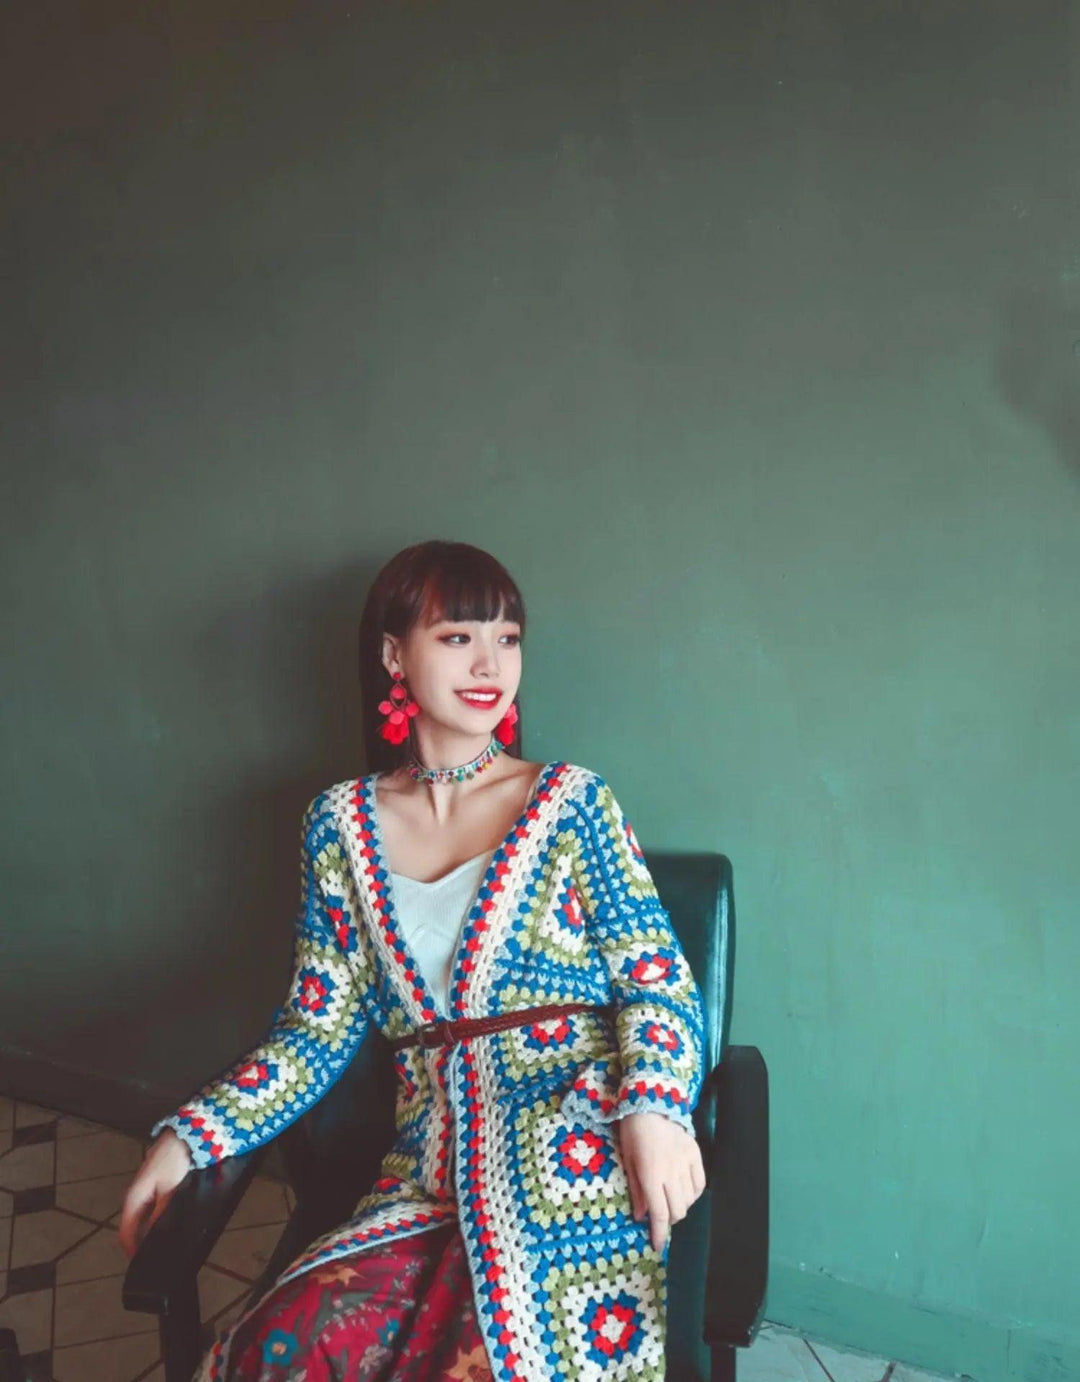 Breathable Handmade knitting Long Jacket - Mishastyle